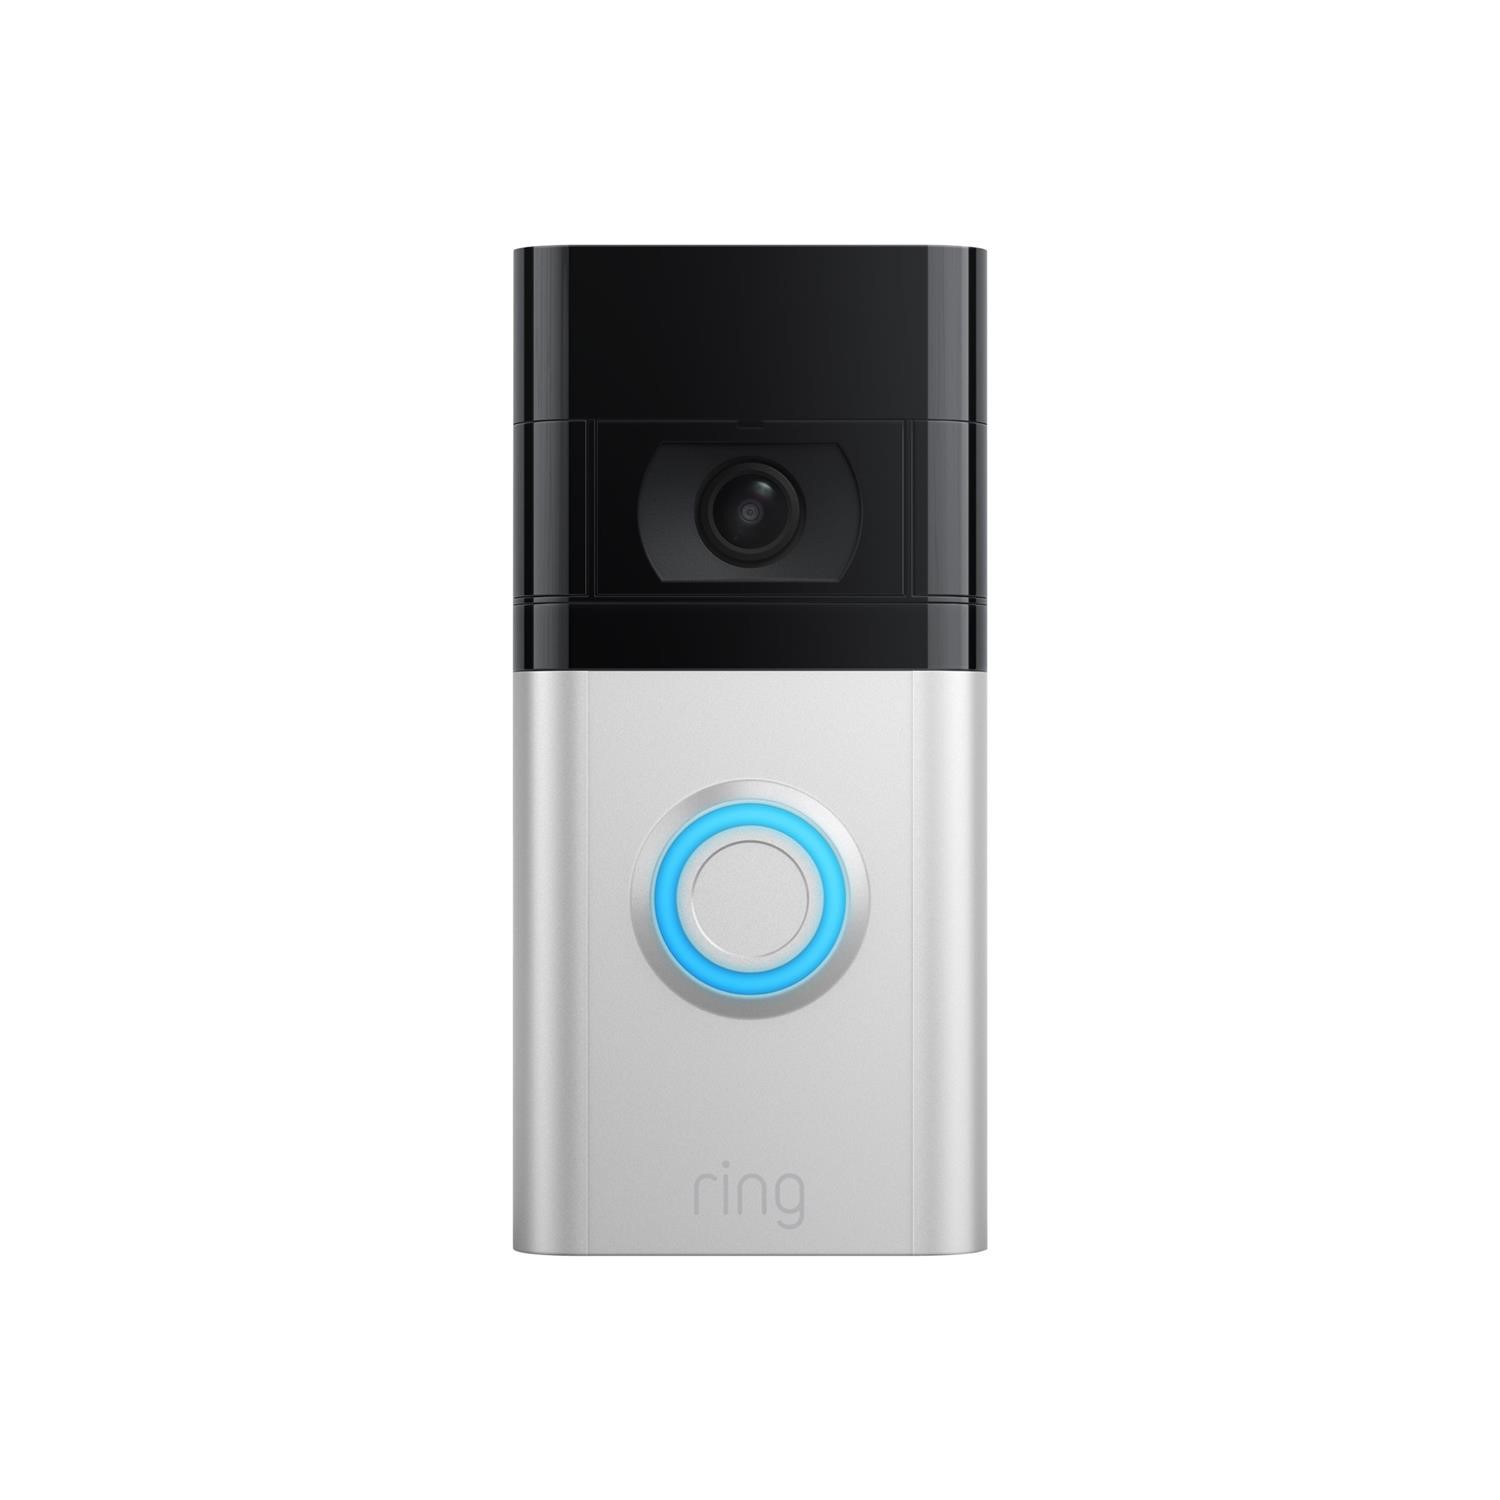 Ring 1080p HD Video Doorbell 4 - Satin Nickel